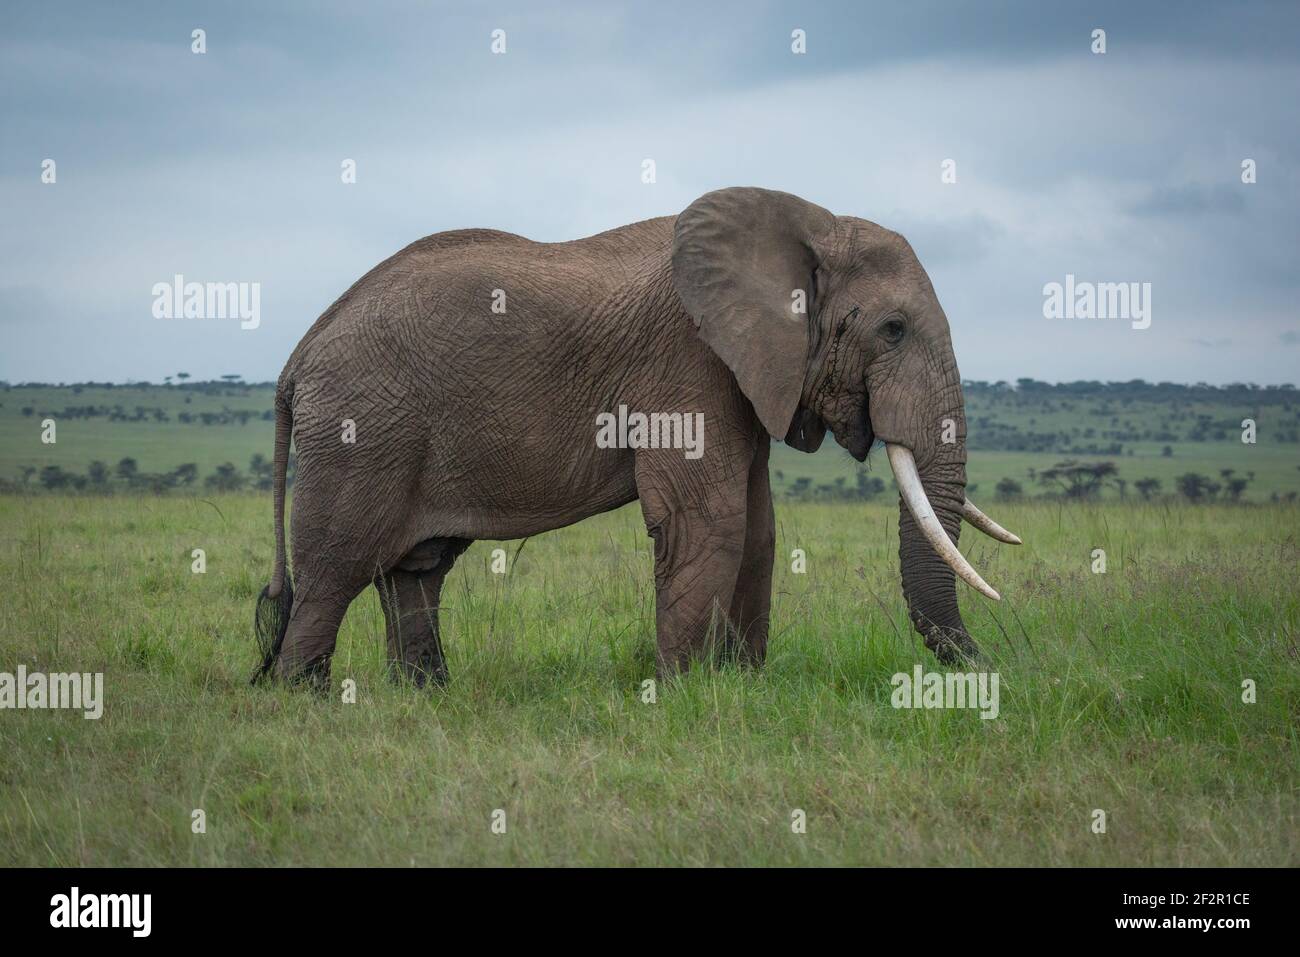 Elefante arbusto africano en el perfil en la pradera Foto de stock